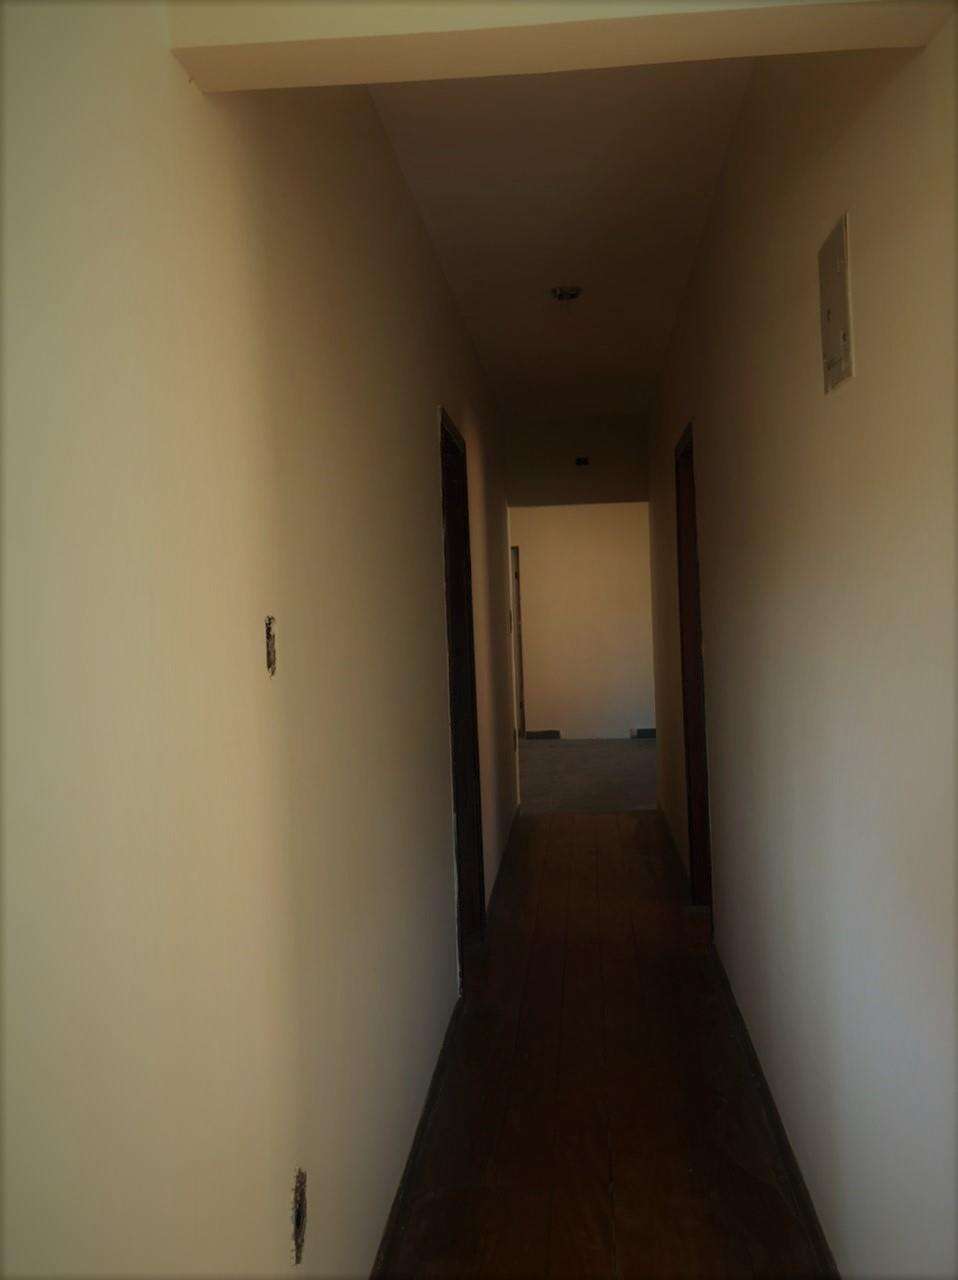 Apartamento 3 quartos à venda no Limoeiro: 02336f50-d-whatsapp-image-2021-06-18-at-16.32.49.jpeg